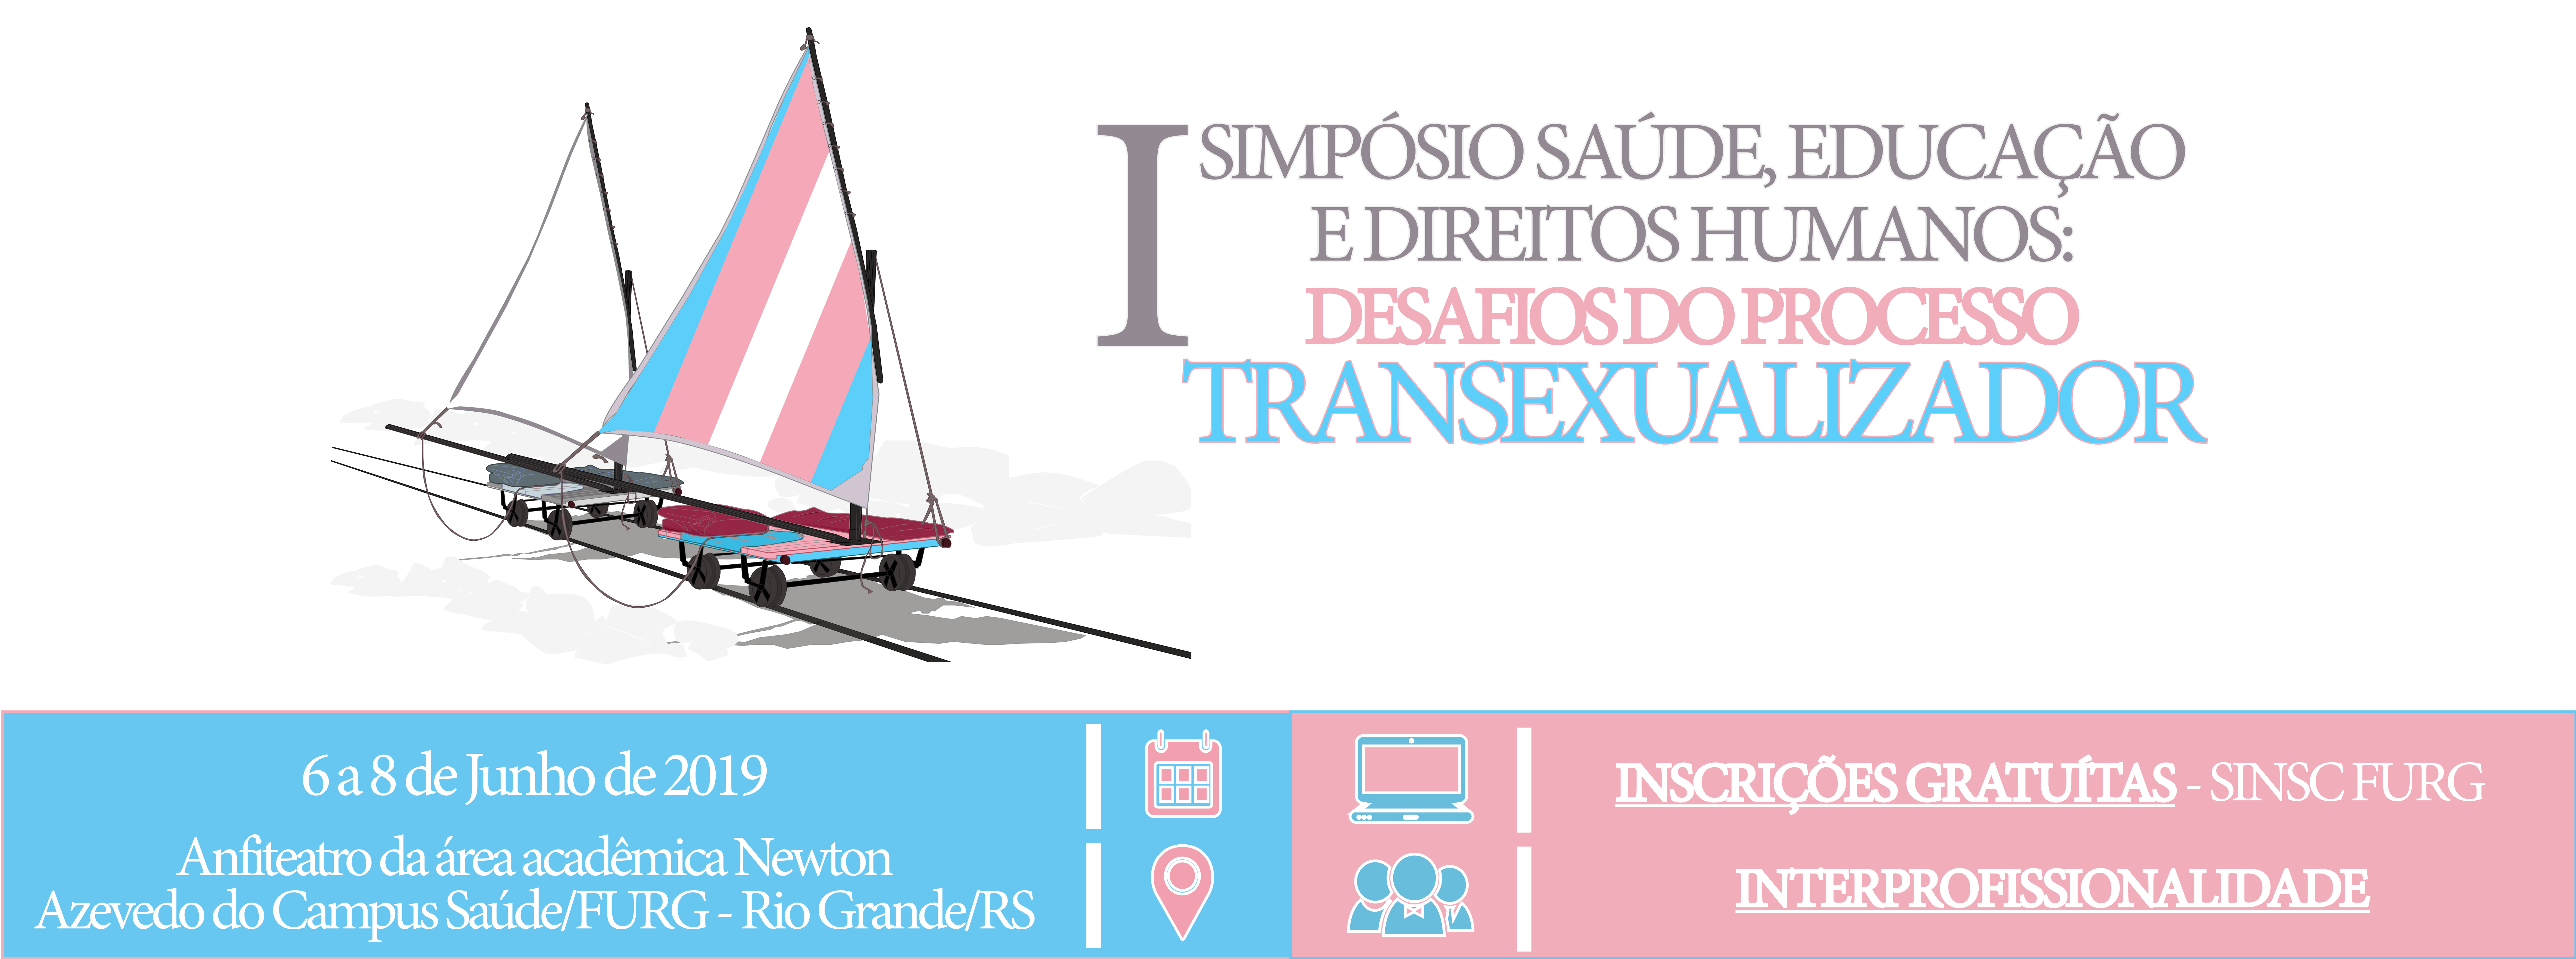 Simpósio Saúde, Educação e Direitos Humanos: desafios no processo transexualizador